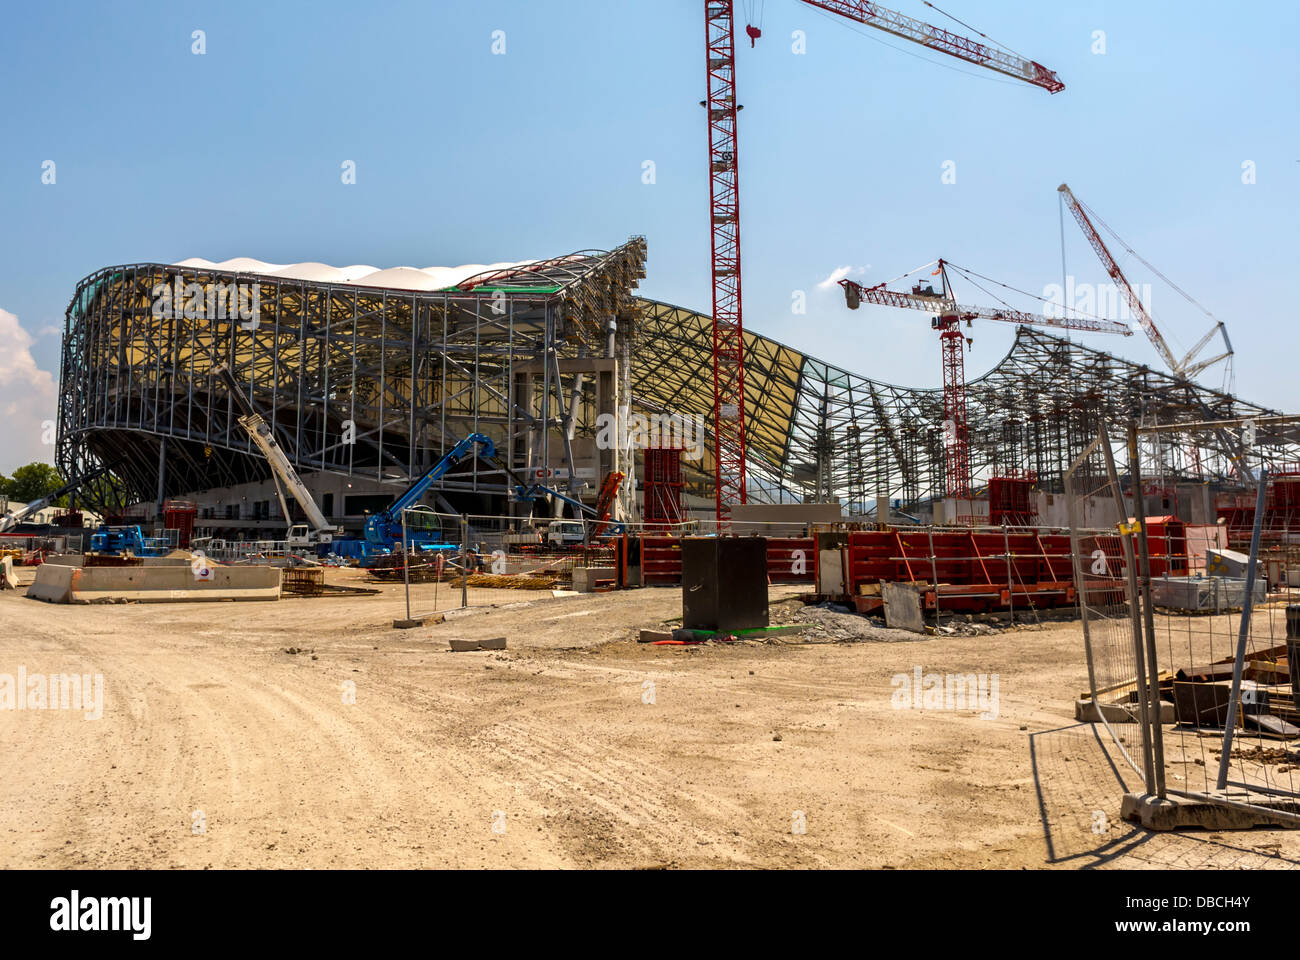 Rénovation du Stade Vélodrome de Marseille - Actualités - CSTB